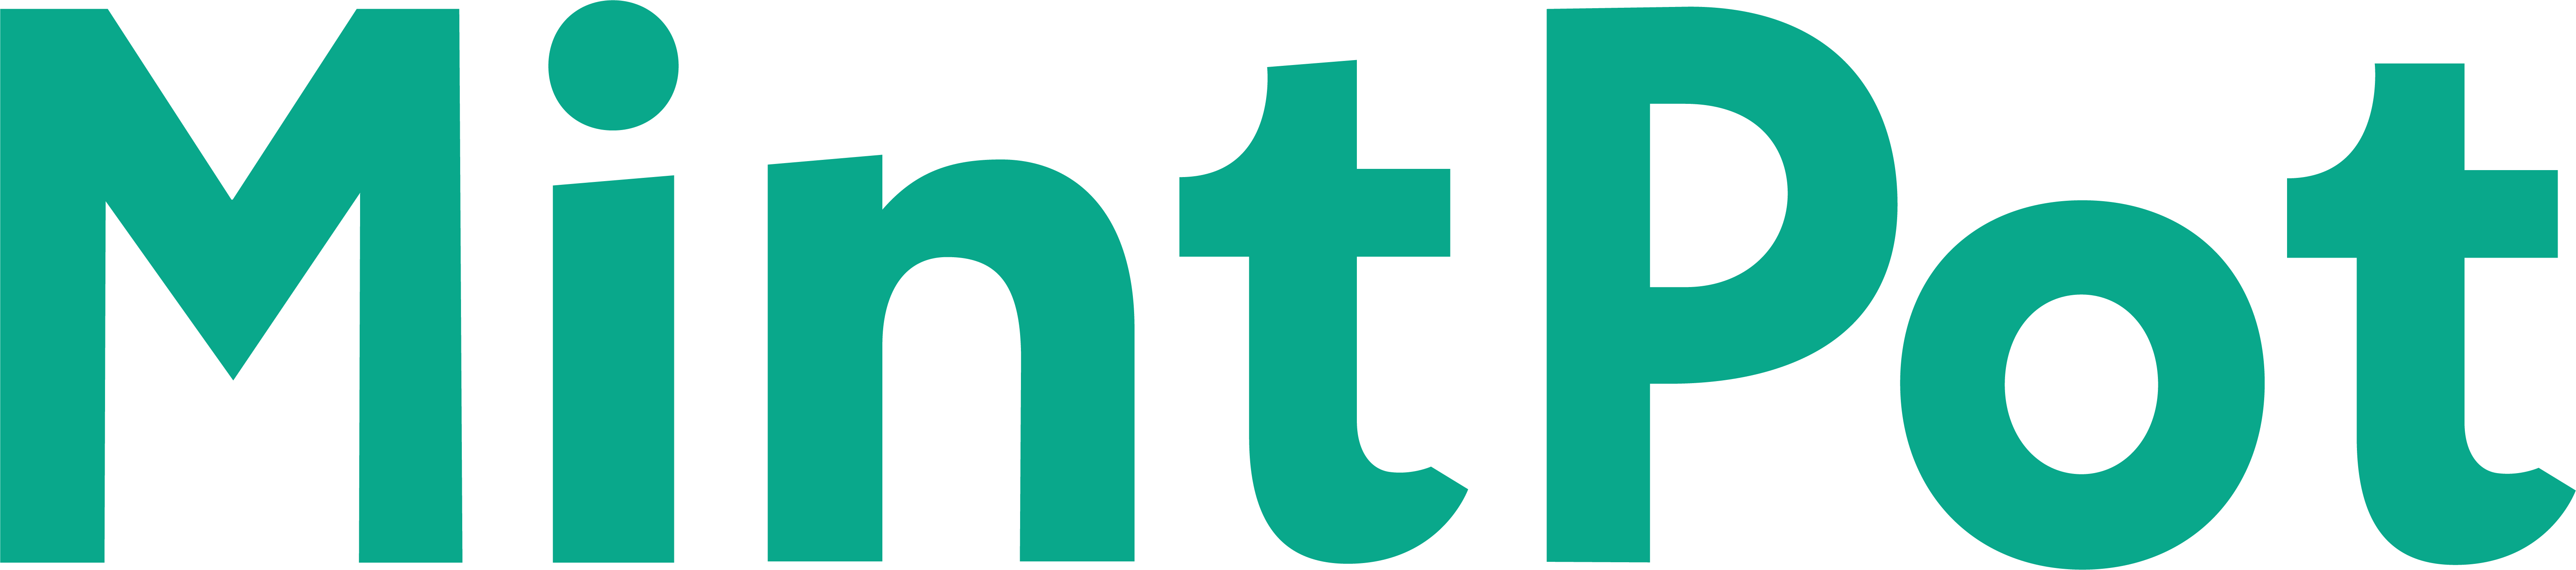 mintpot_logo.png